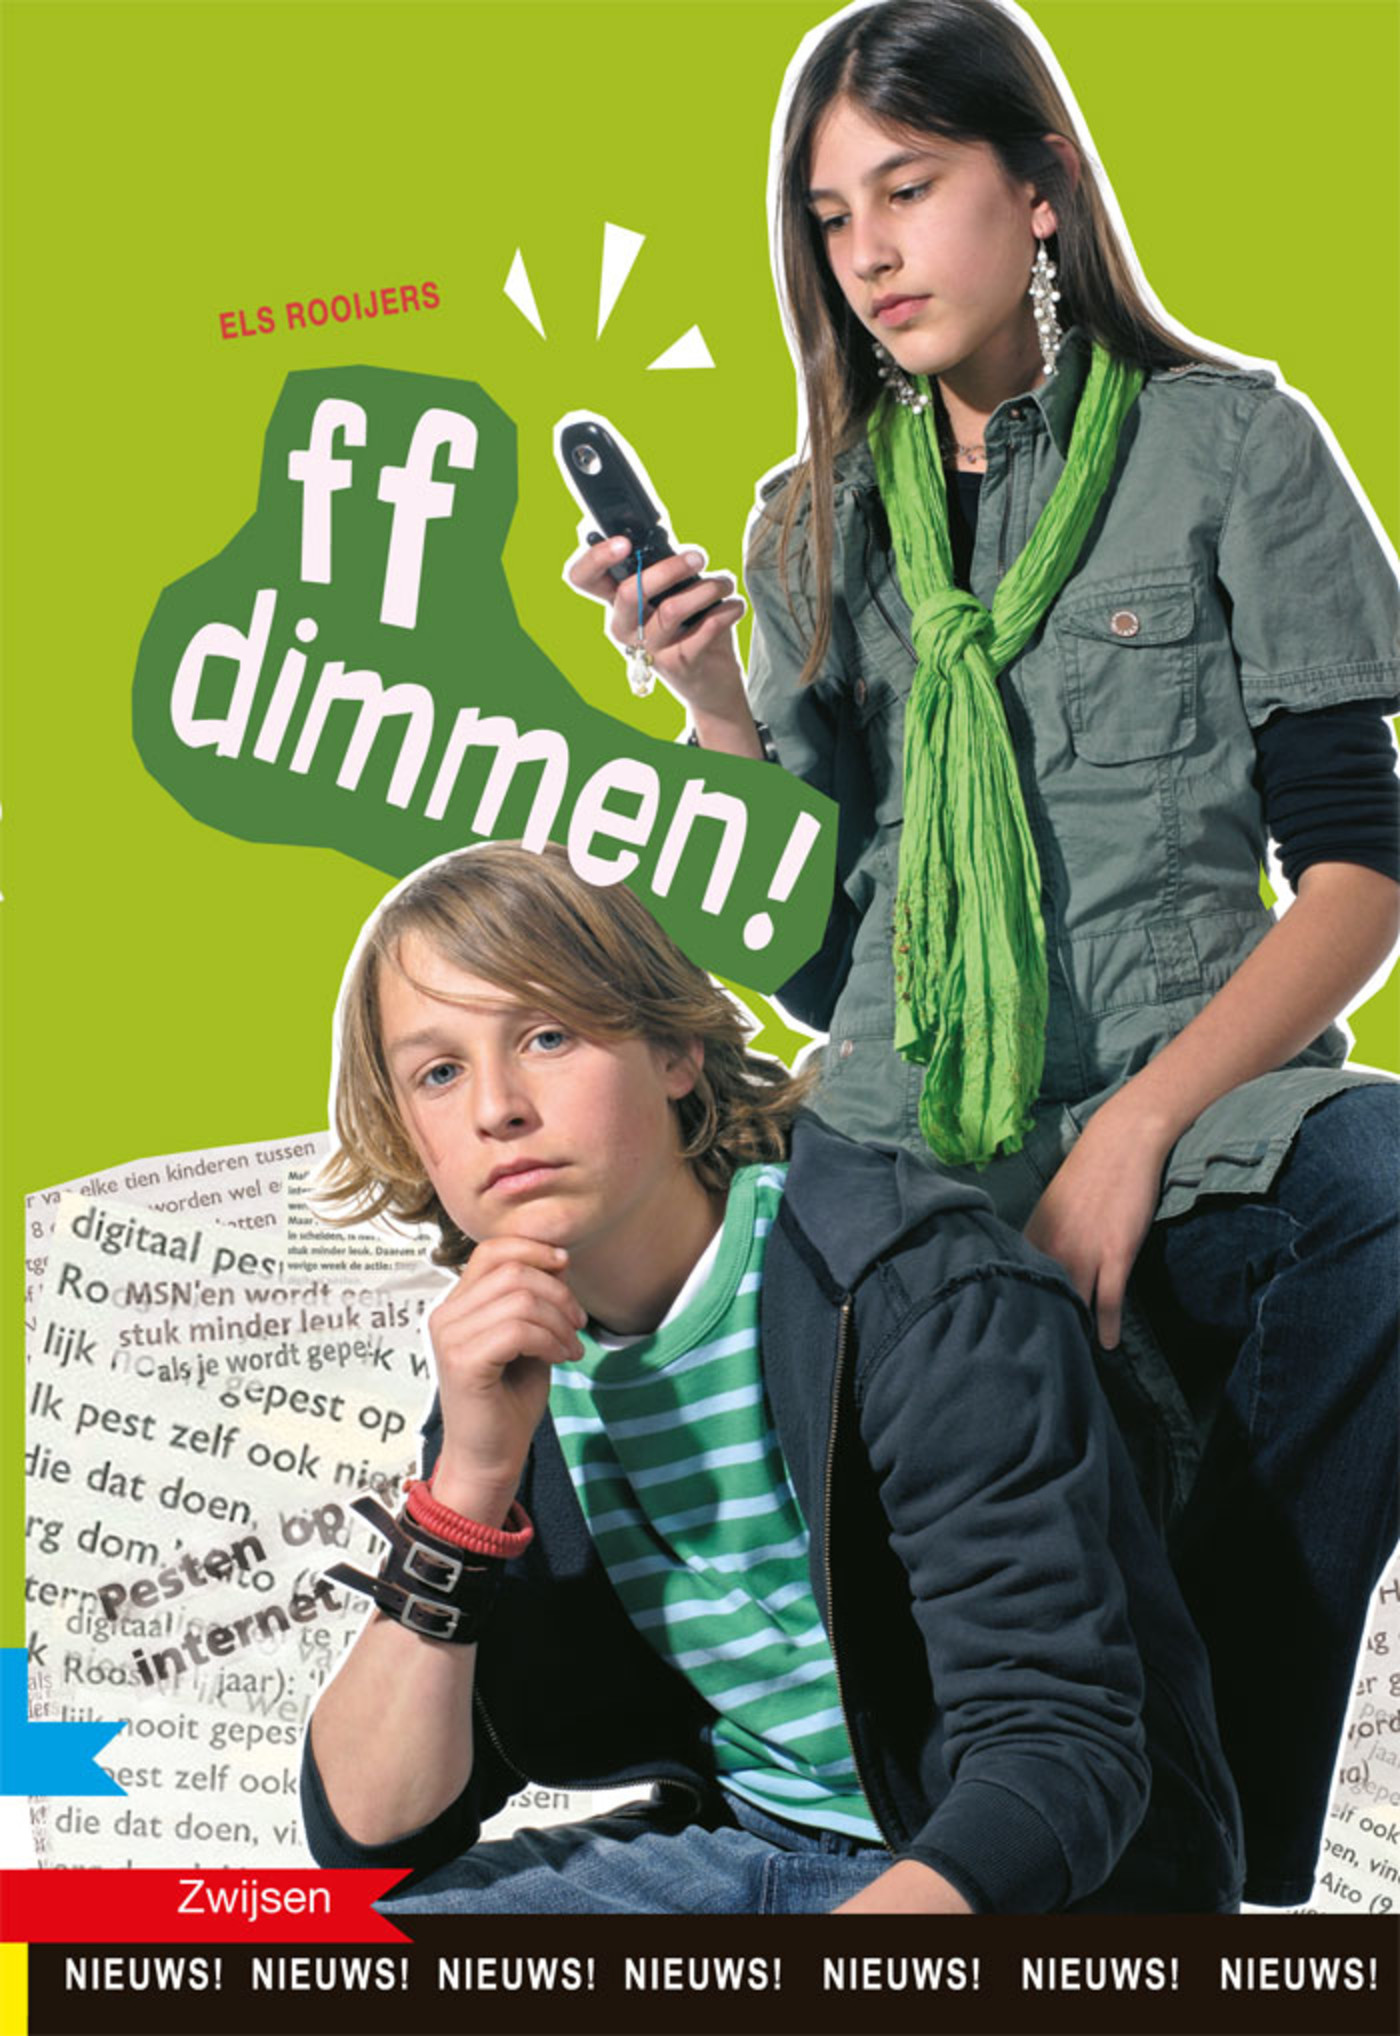 ff dimmen! (Ebook)